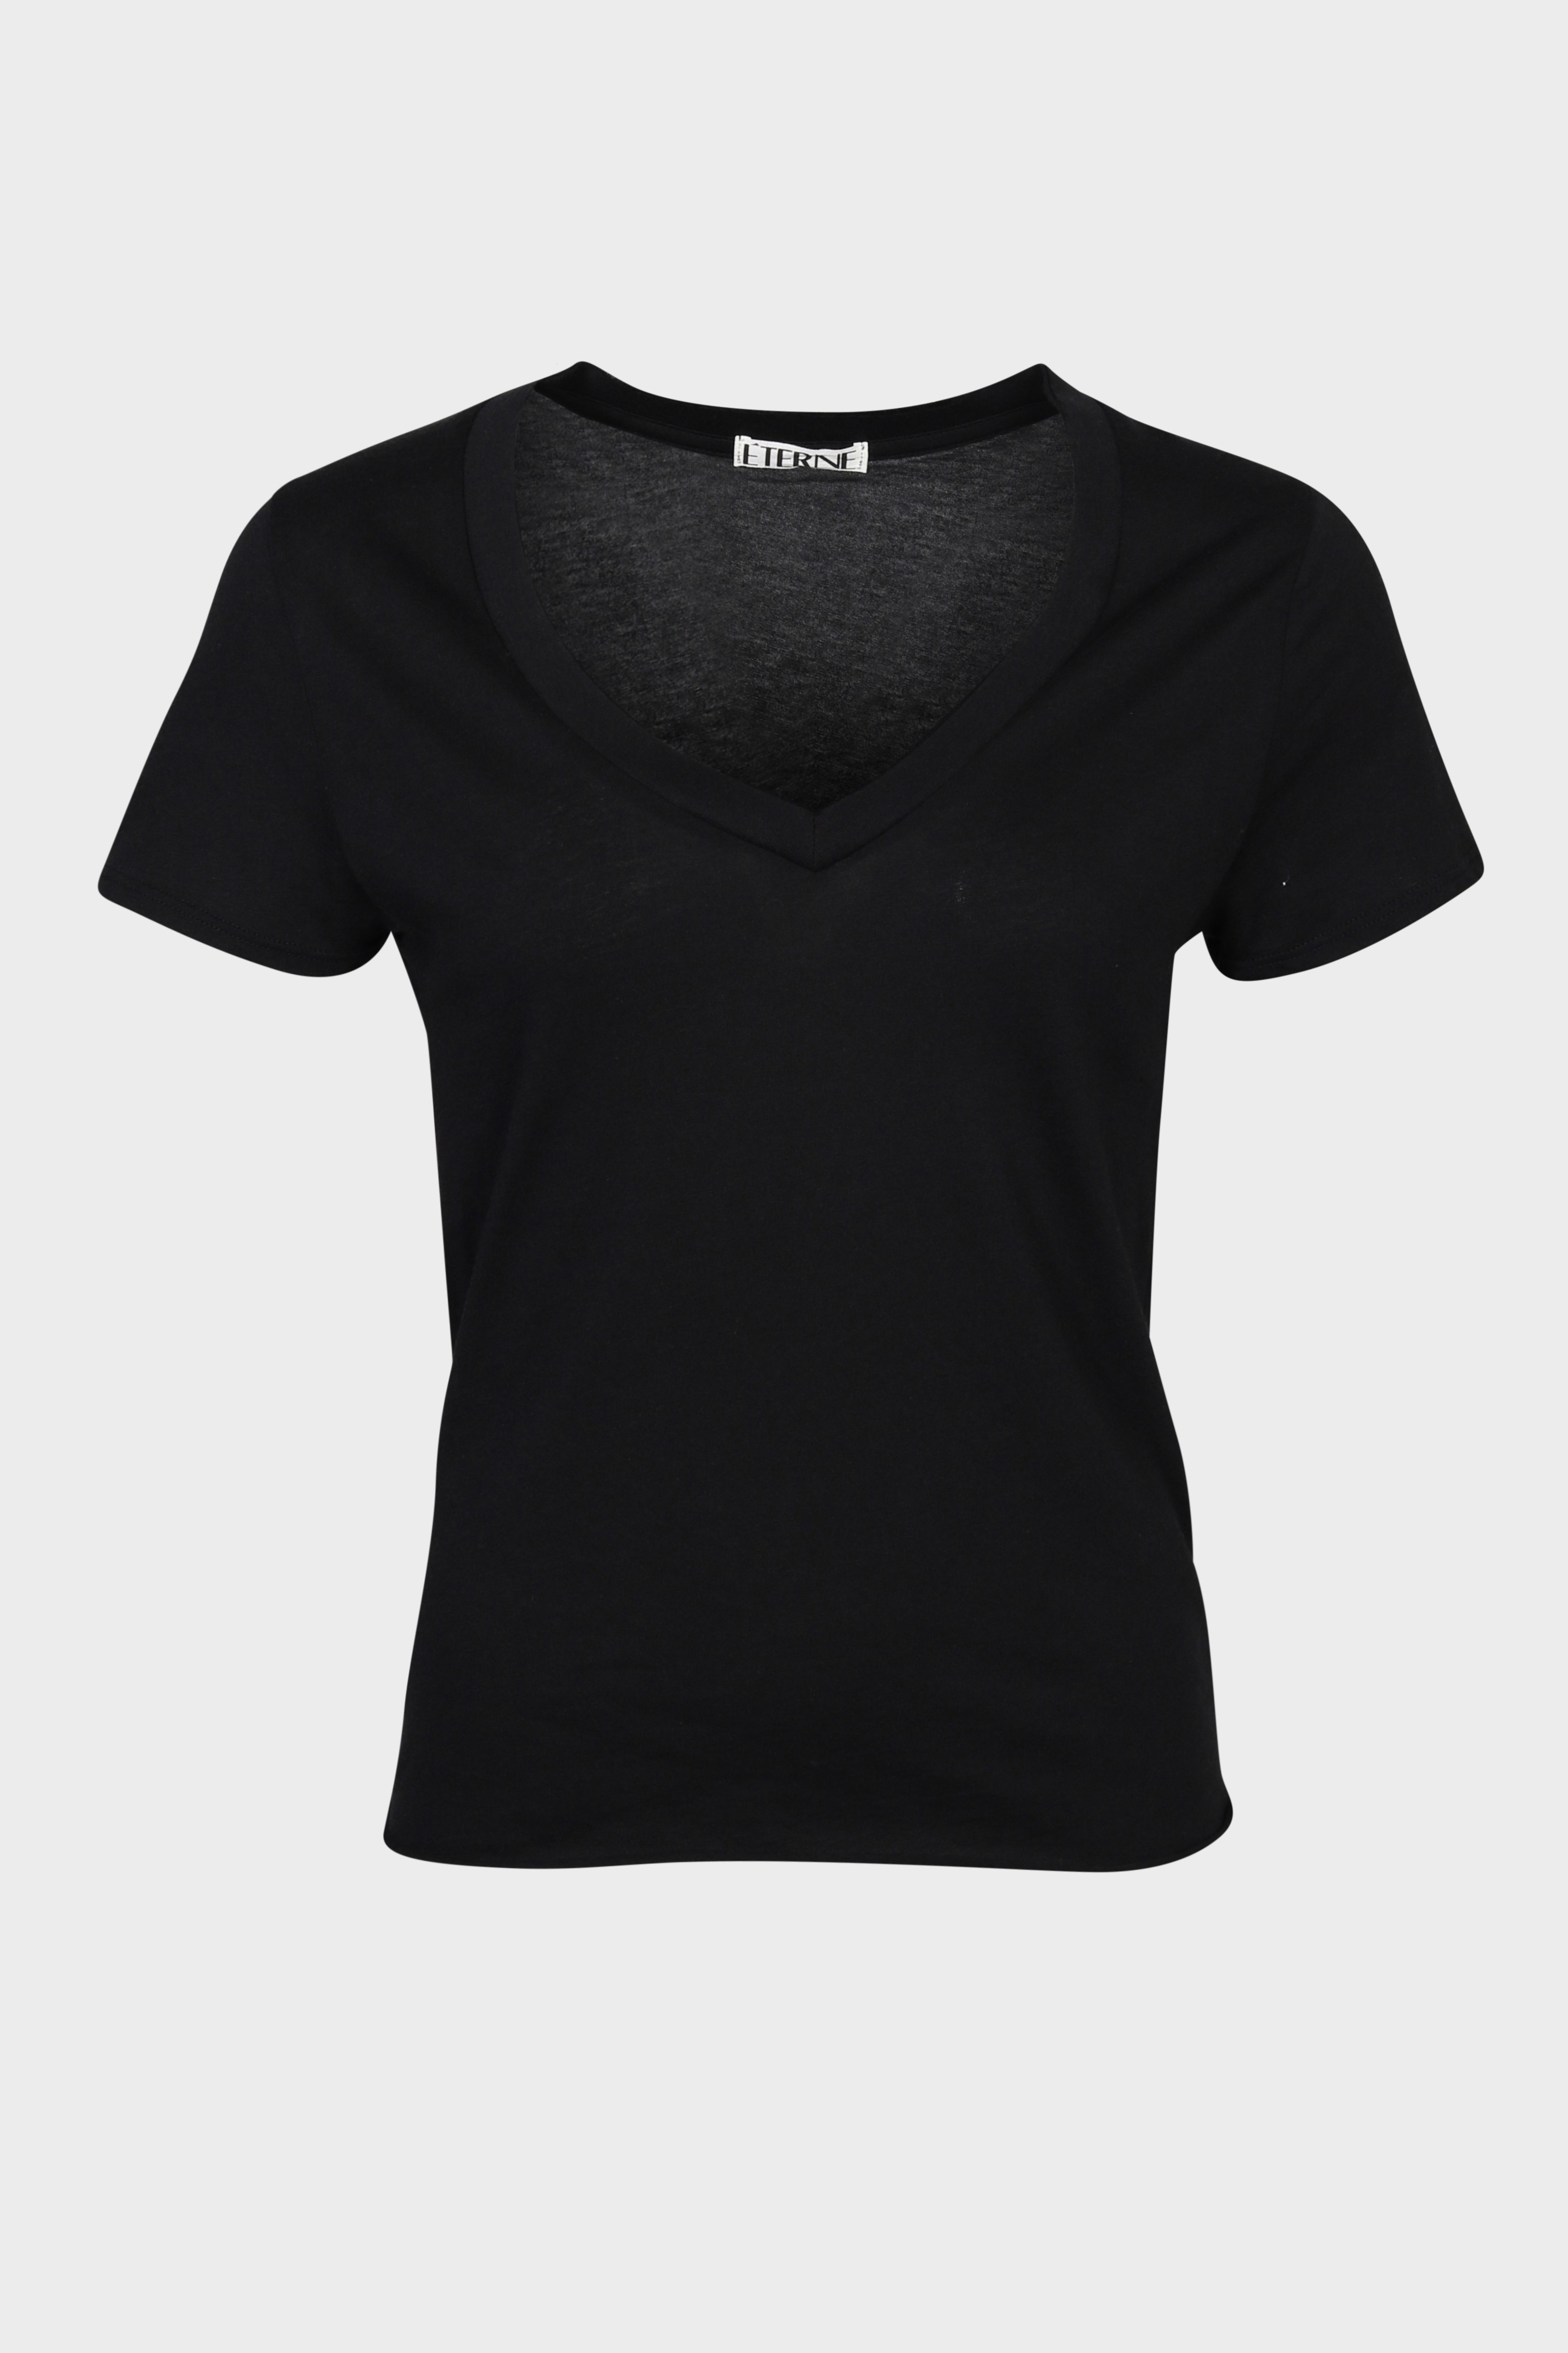 ÉTERNE V-Neck T-Shirt in Black XS